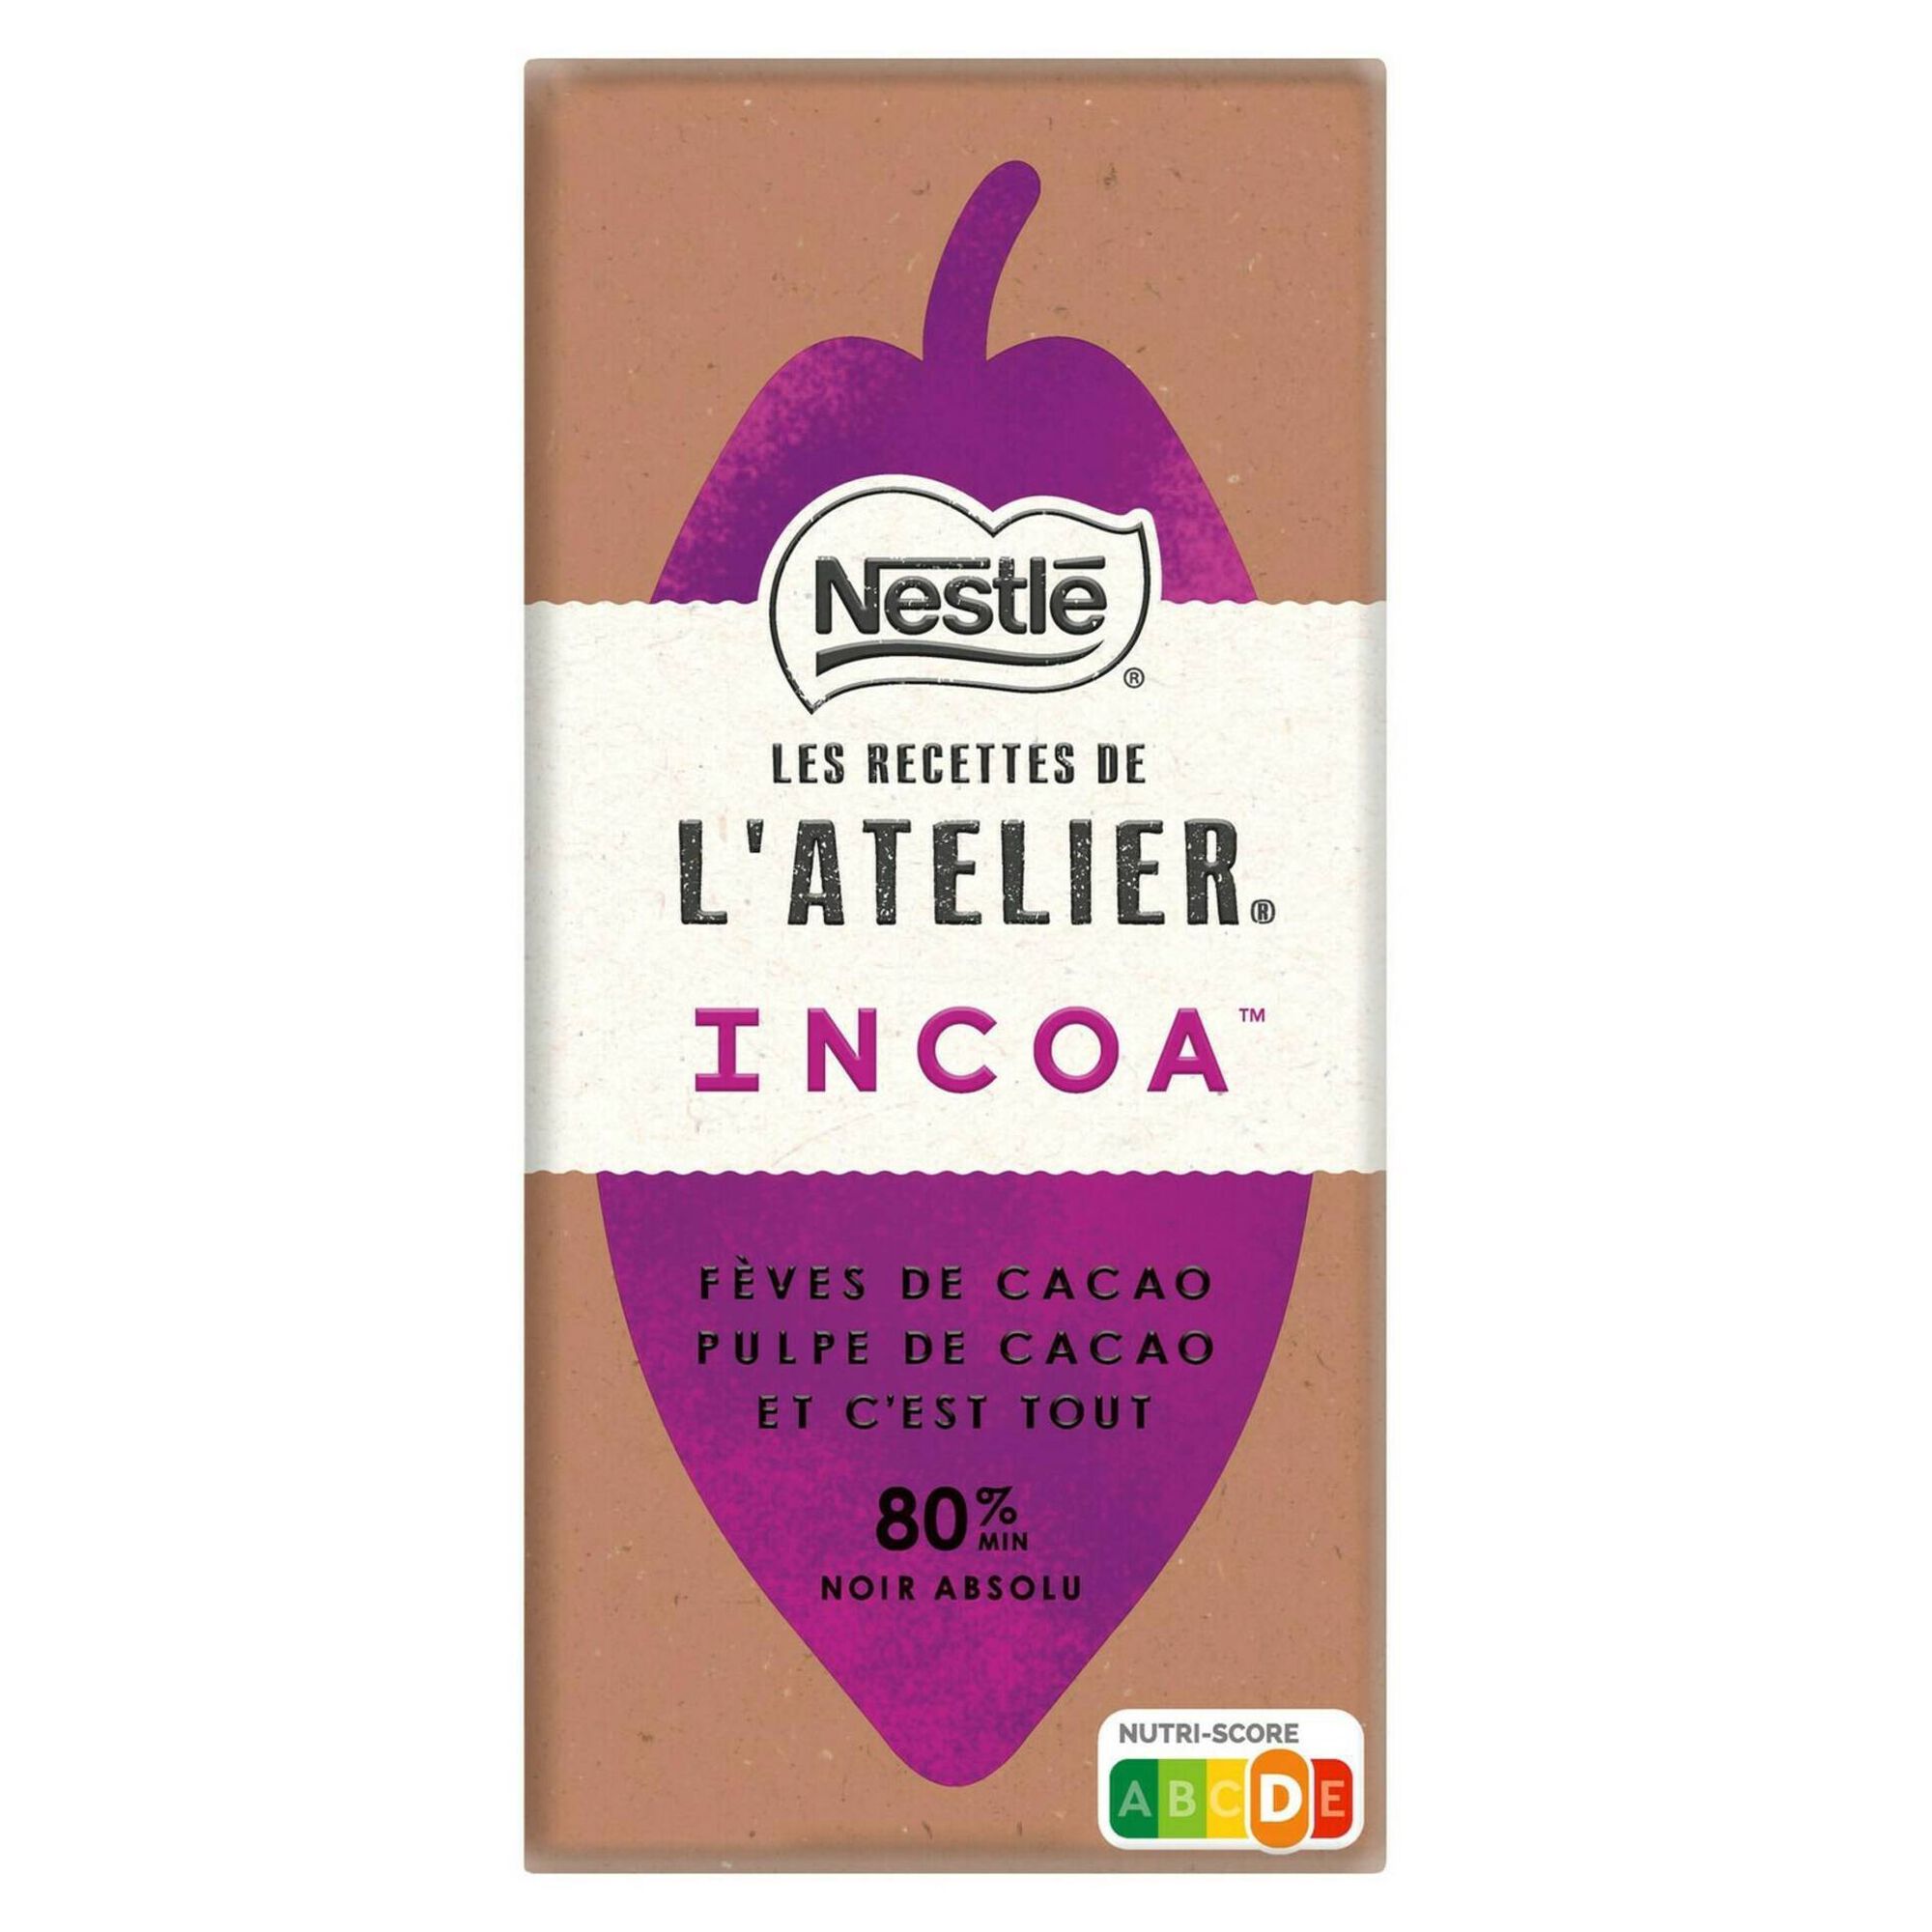 Tablete de Chocolate Negro 80% Incoa Les Recettes de L'Atelier